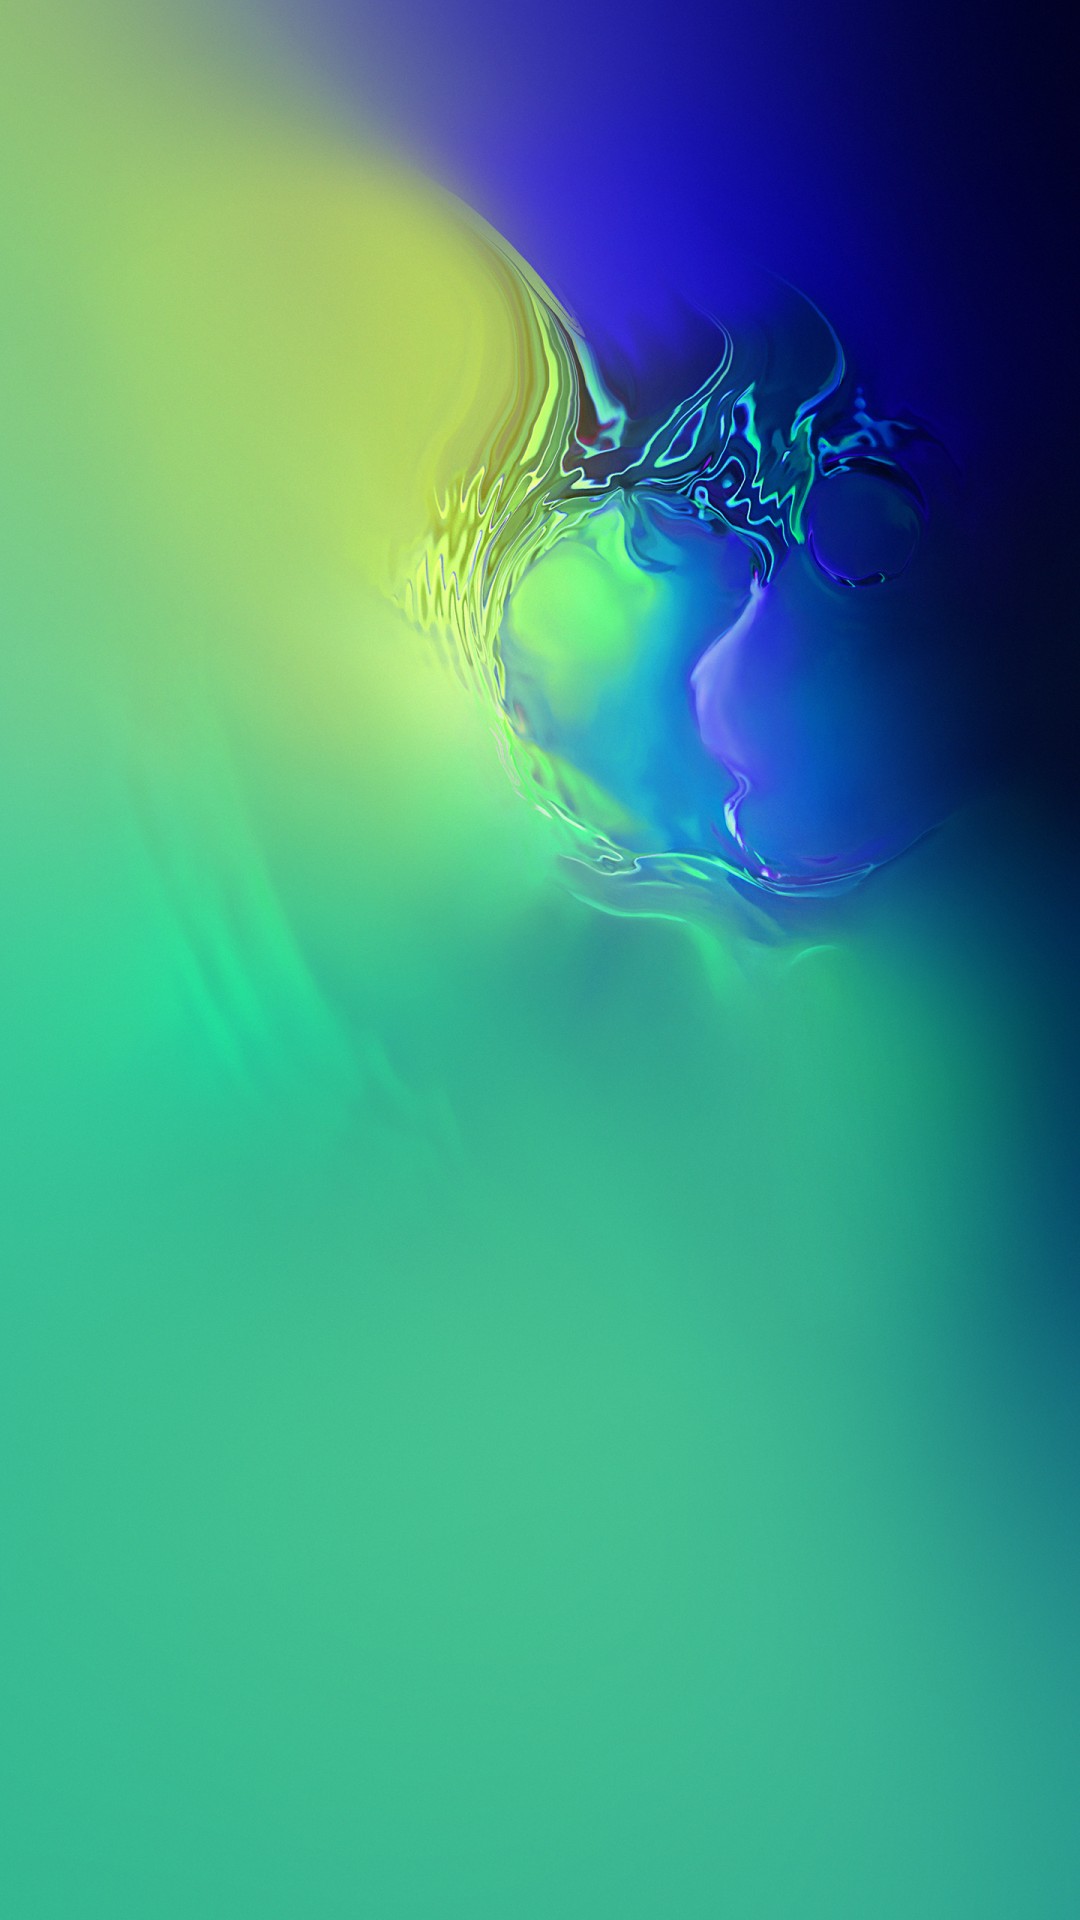 sfondi ultra hd per android,verde,blu,acqua,liquido,disegno grafico